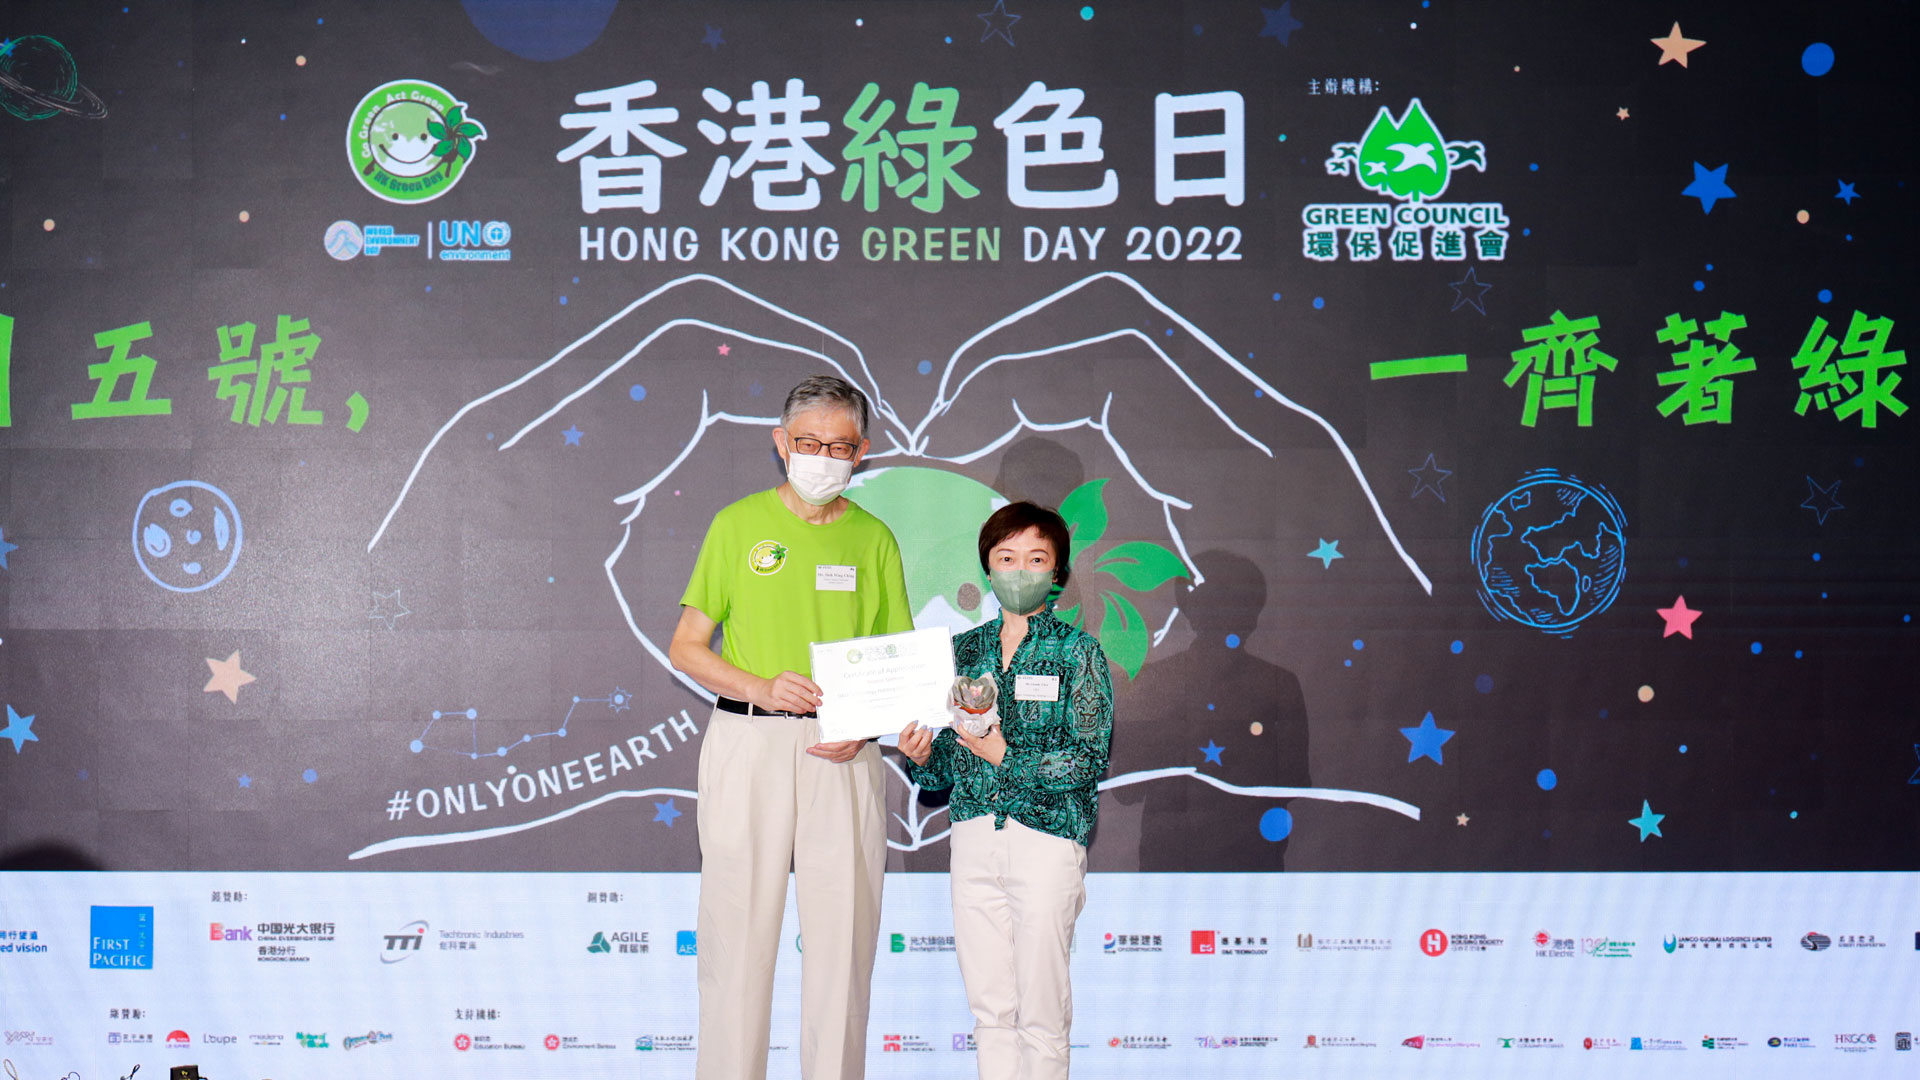 德基科技支持香港绿色日2022及世界环境日